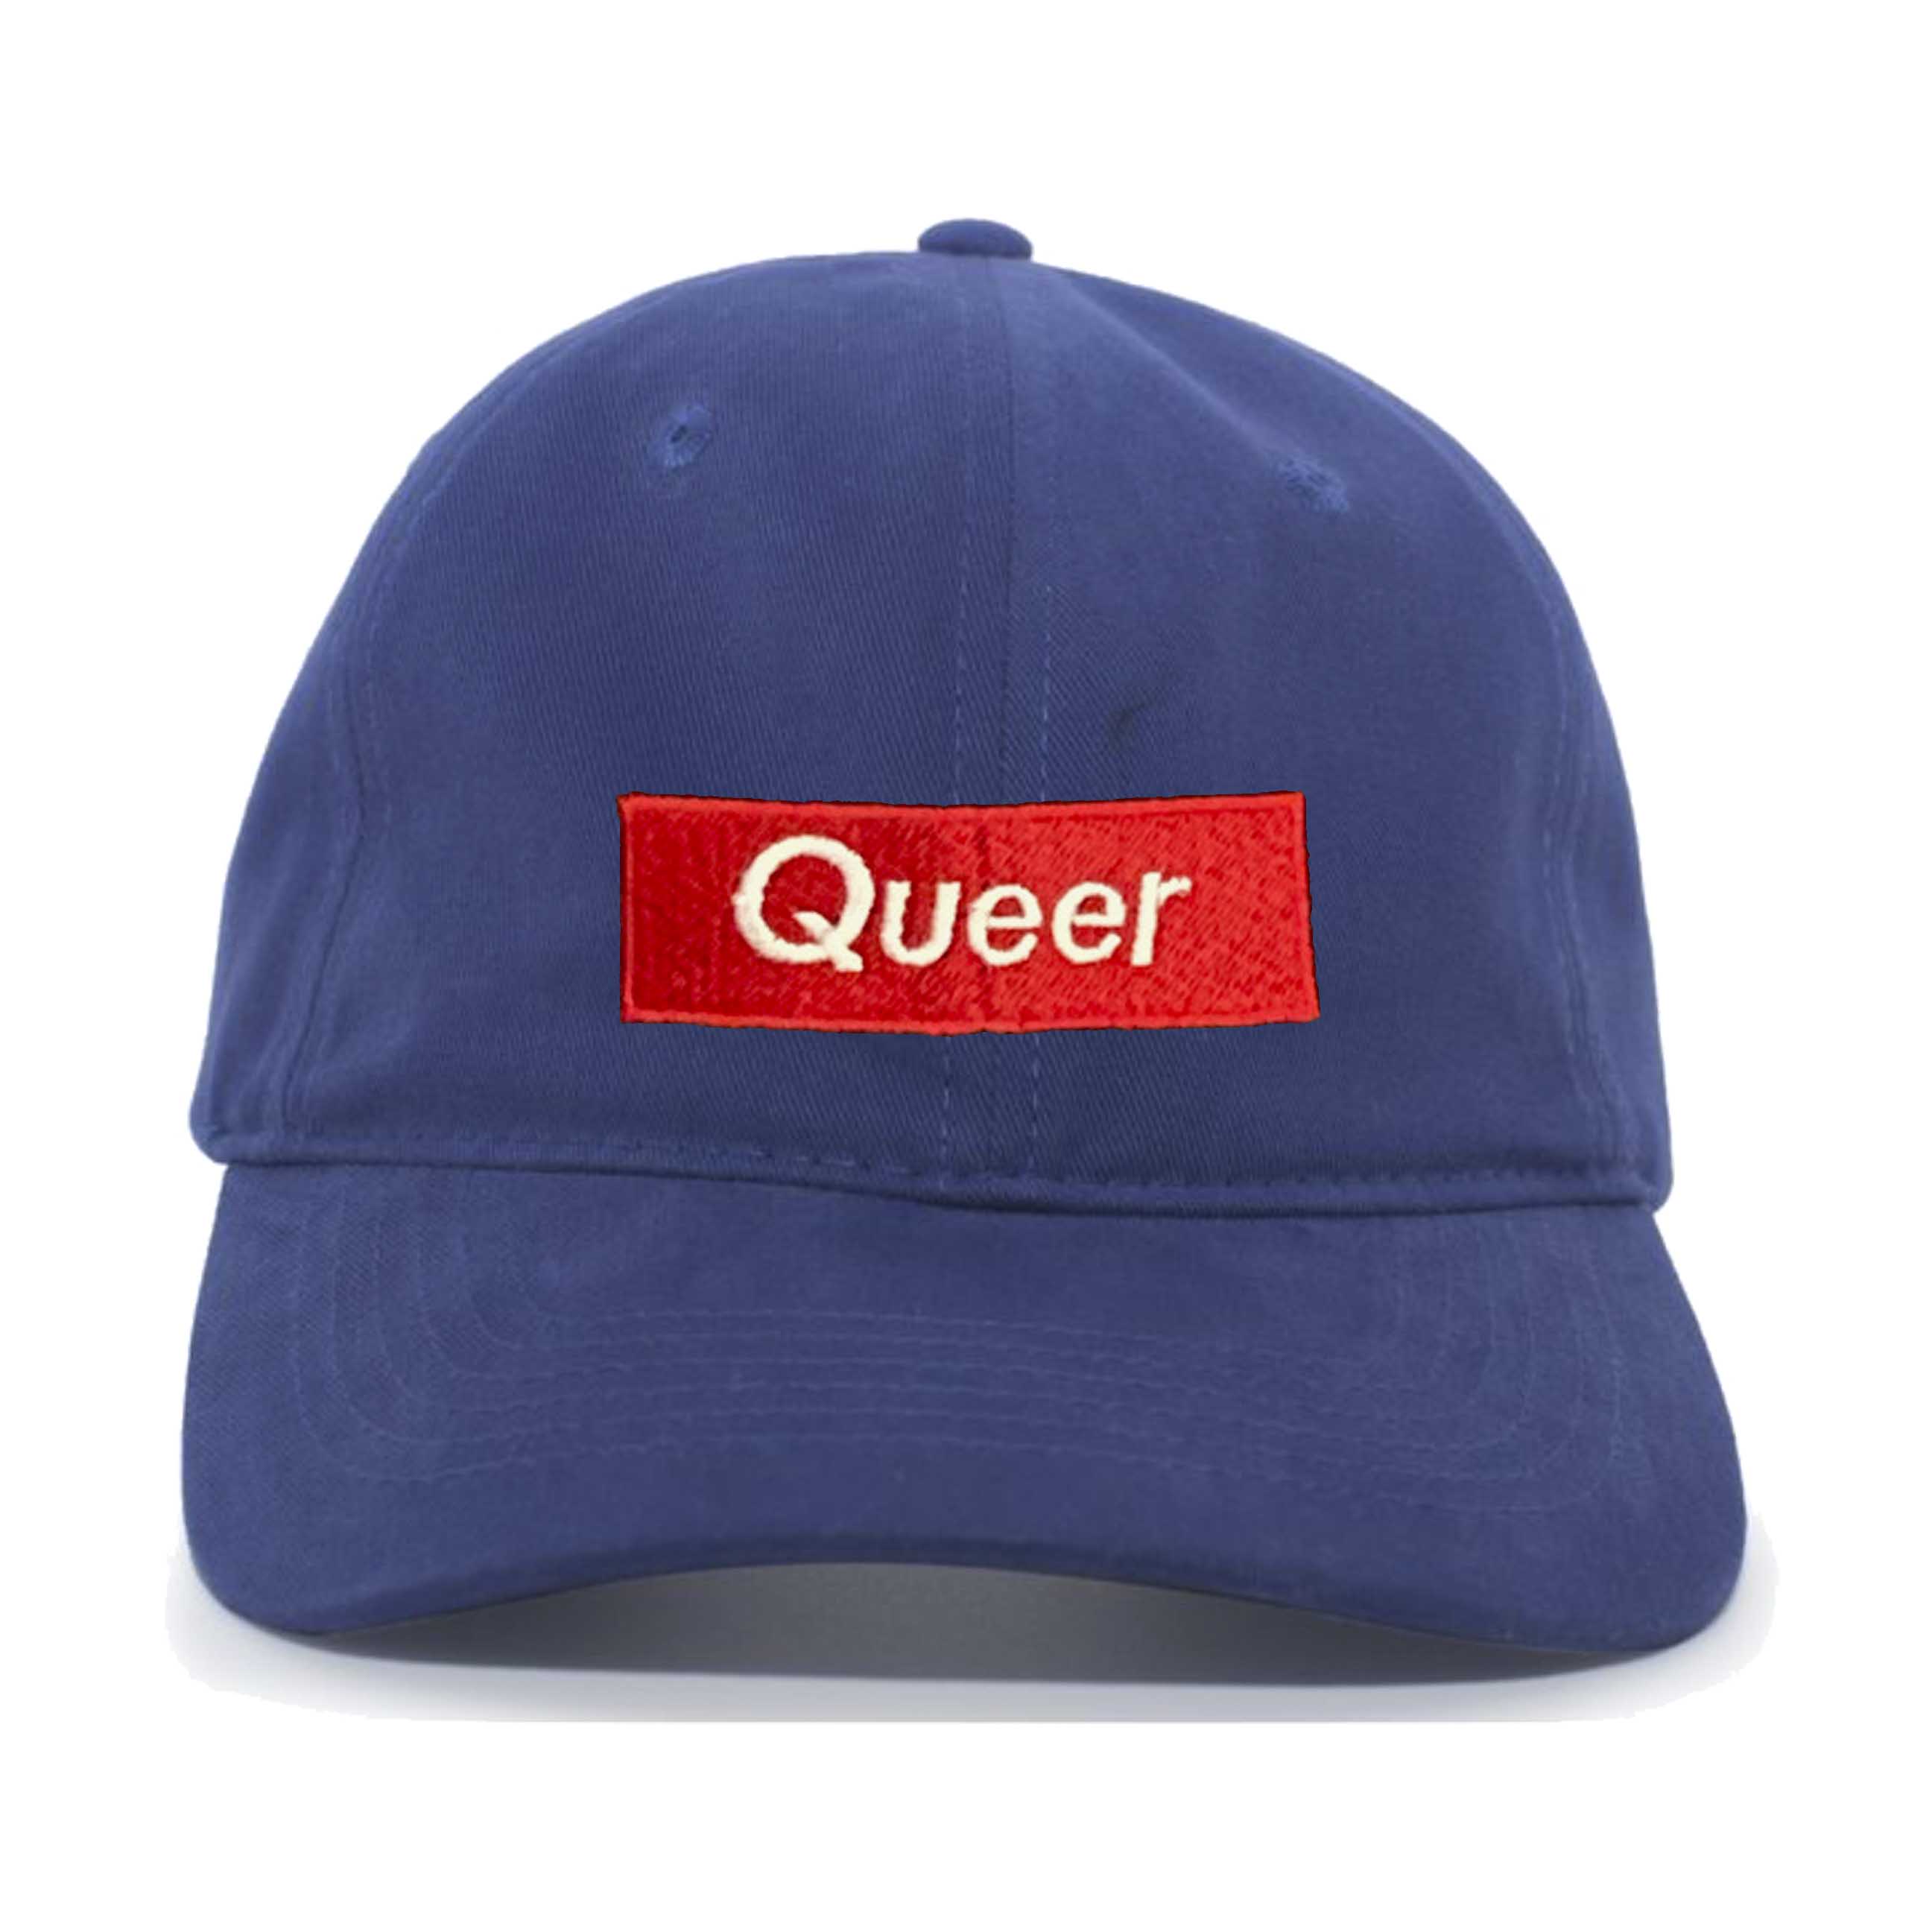 Queer Dad Twill Adjustable Hat Royal